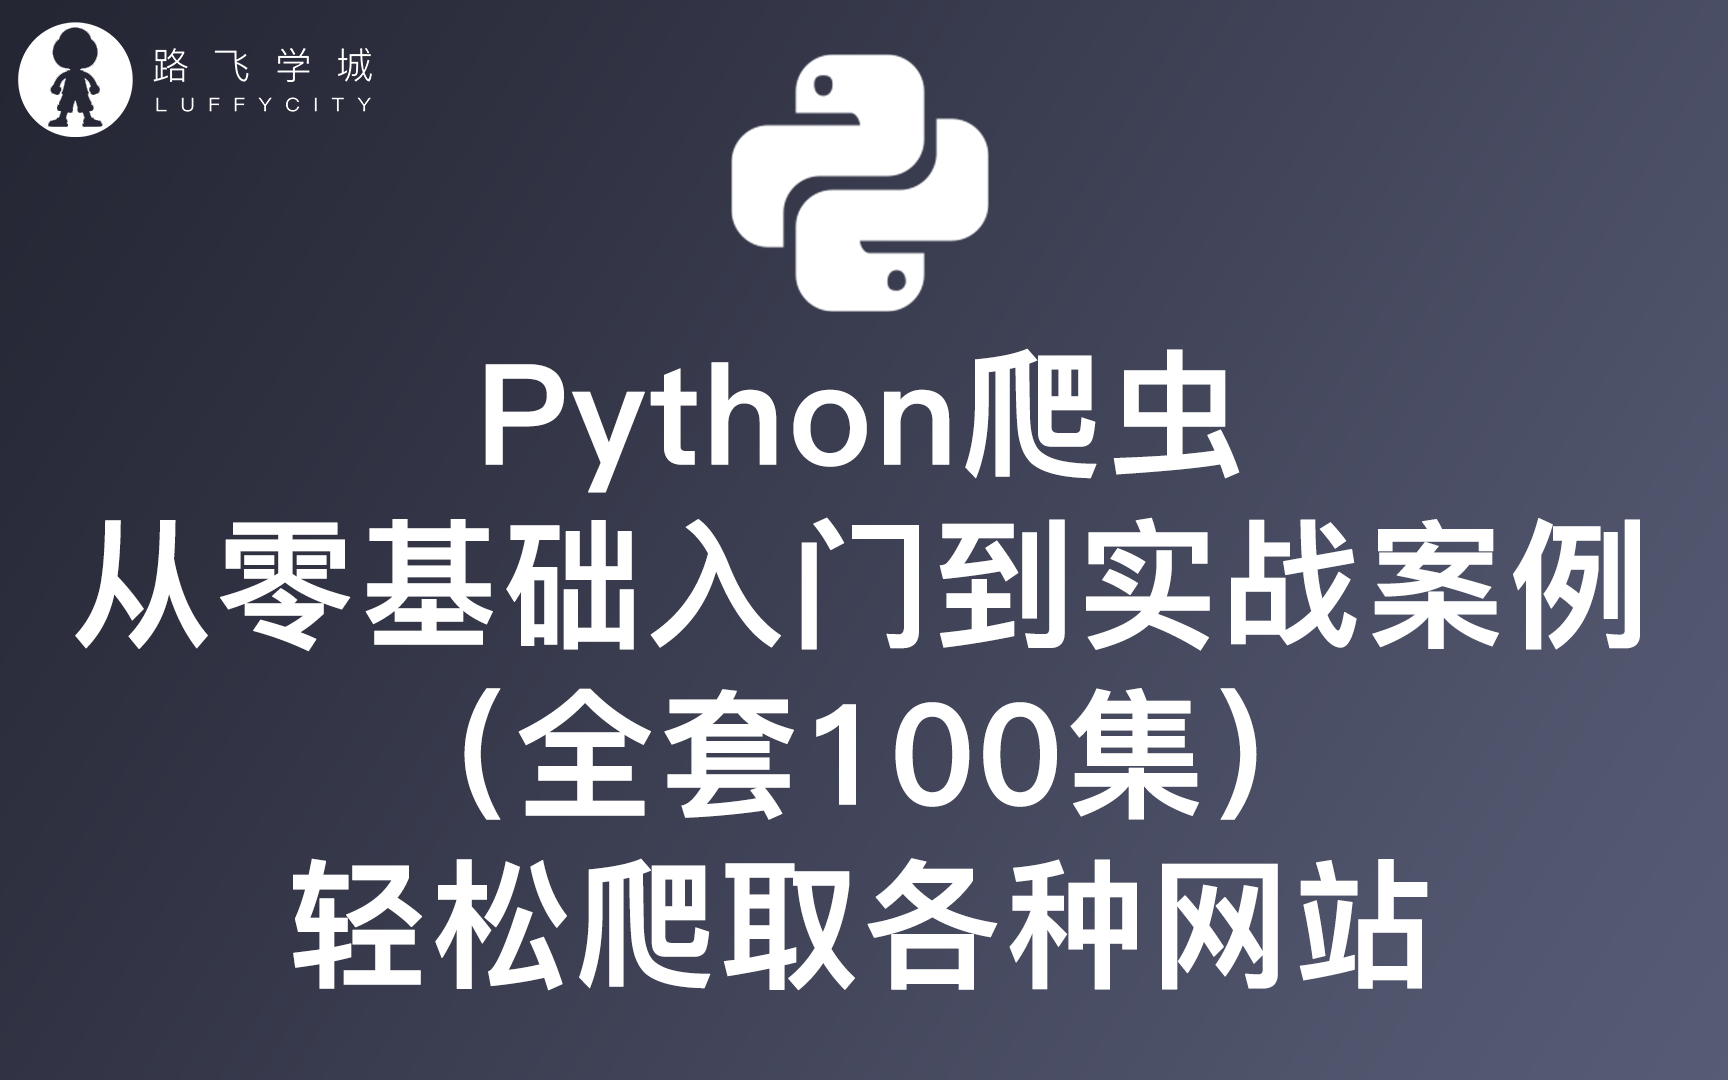 Python爬虫从零基础入门到实战案例（全套100集）轻松爬取各种网站